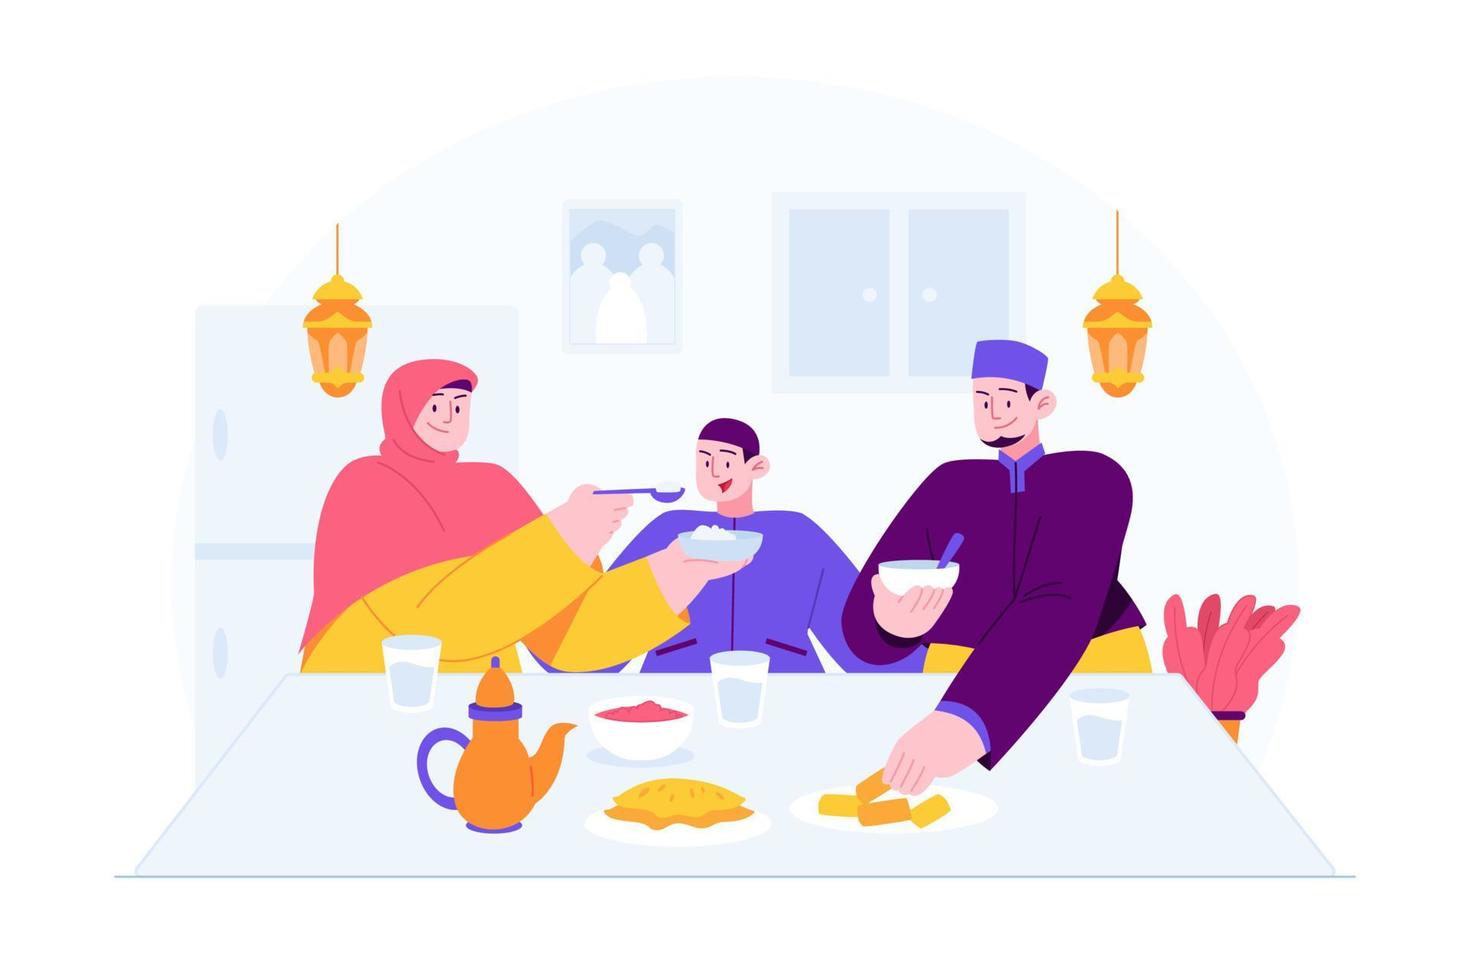 ideia de ilustração vetorial de conceito ramadan kareem mubarak para modelo de página de destino, datas de festa iftar da família islâmica, pessoas rezando antes do café da manhã para o mês sagrado, estilo plano desenhado à mão vetor